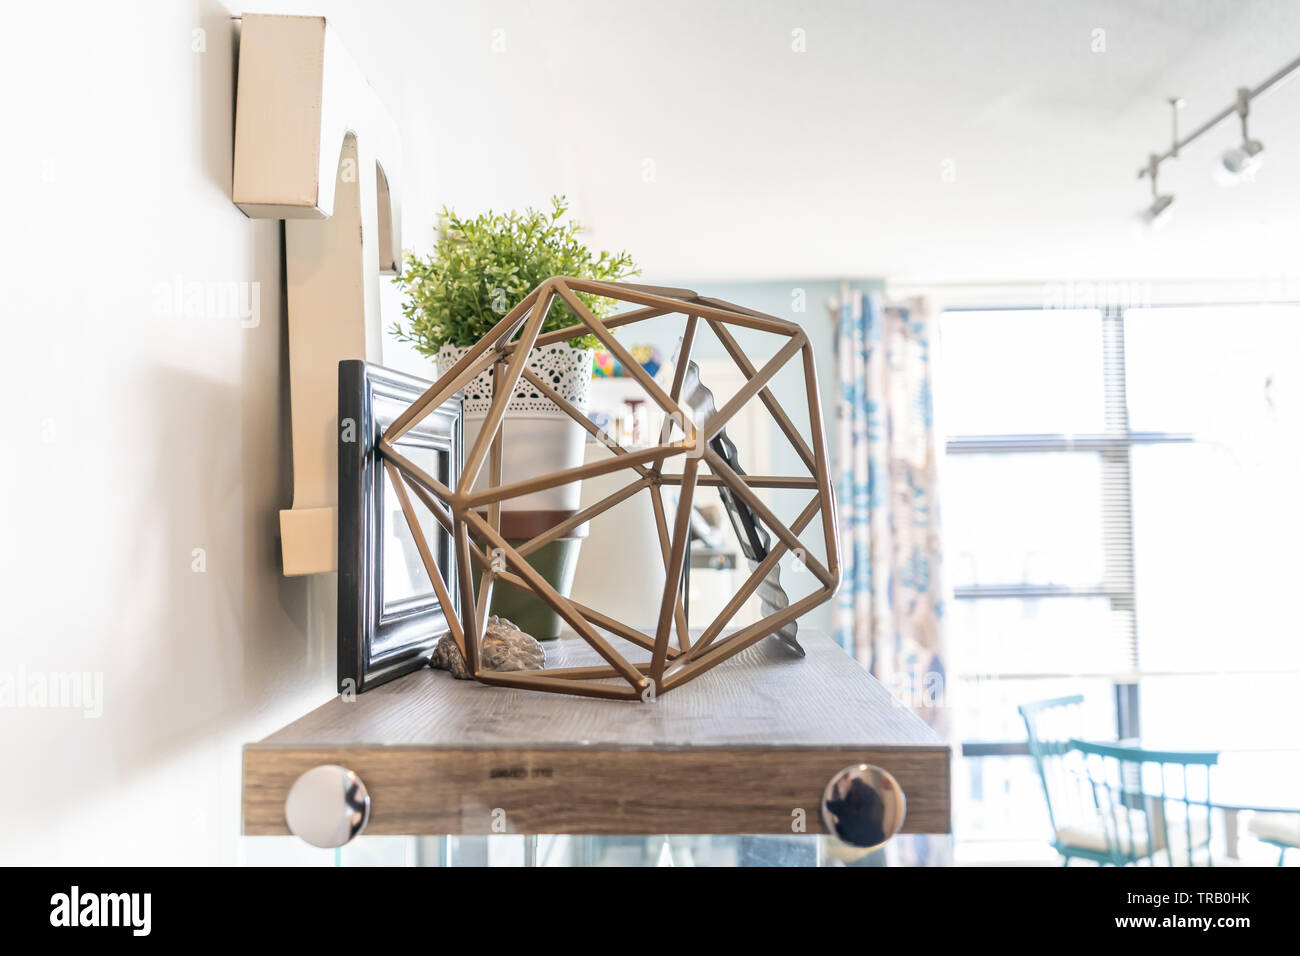 Home Wandregal mit dekorativem Schnickschnack, einschließlich einer  geometrischen Kabel Objekt, einen Buchstaben "t", Bilderrahmen und einer  Pflanzmaschine. Helles Wohnzimmer Regal Stockfotografie - Alamy